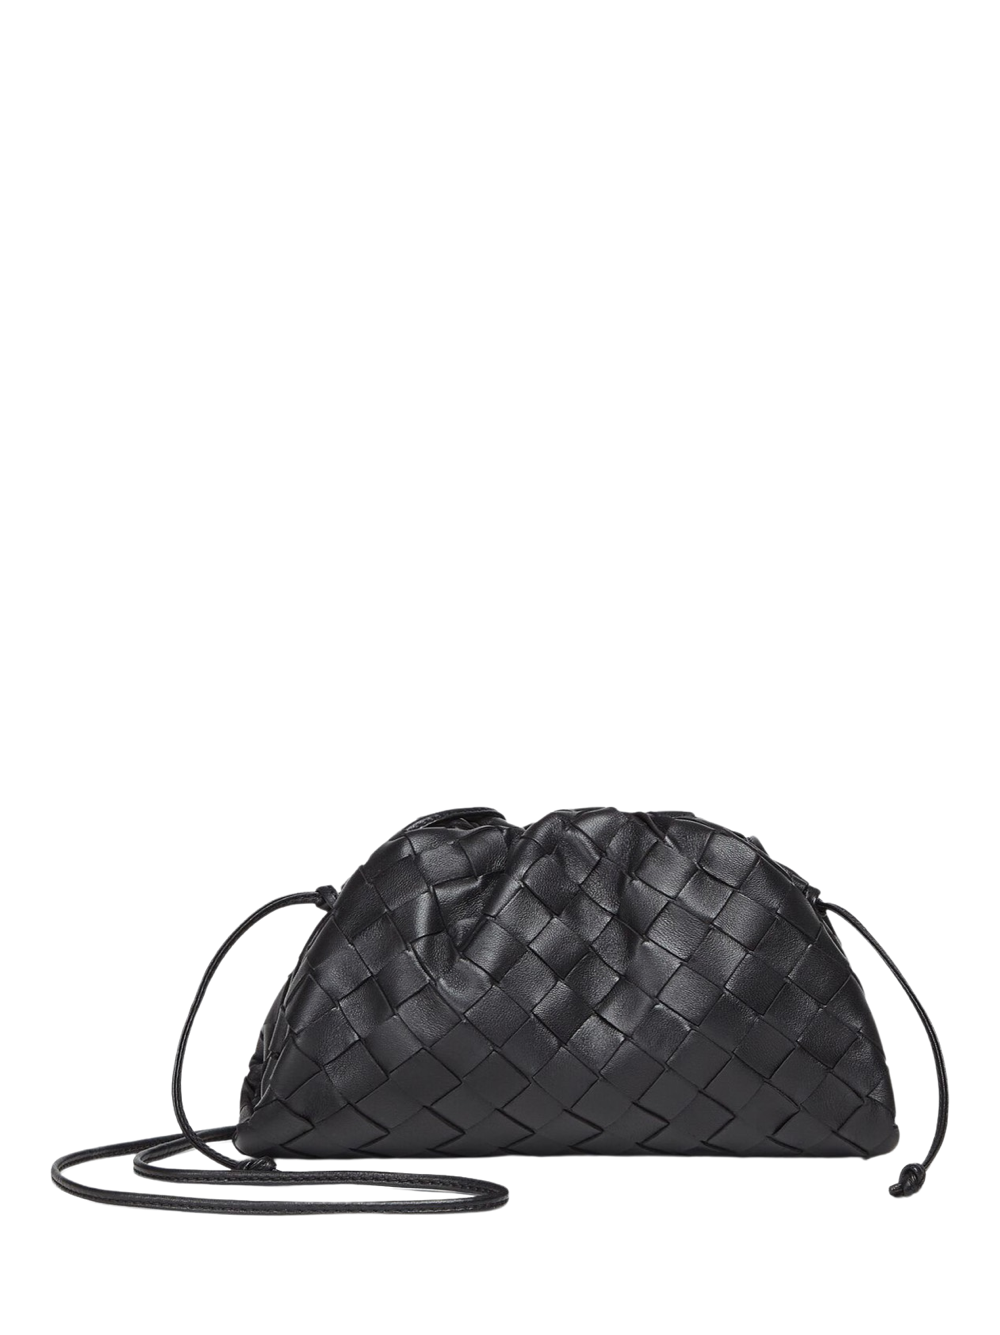 Bottega Veneta Intrecciato Woven Leather Mini Pouch Crossbody Bag